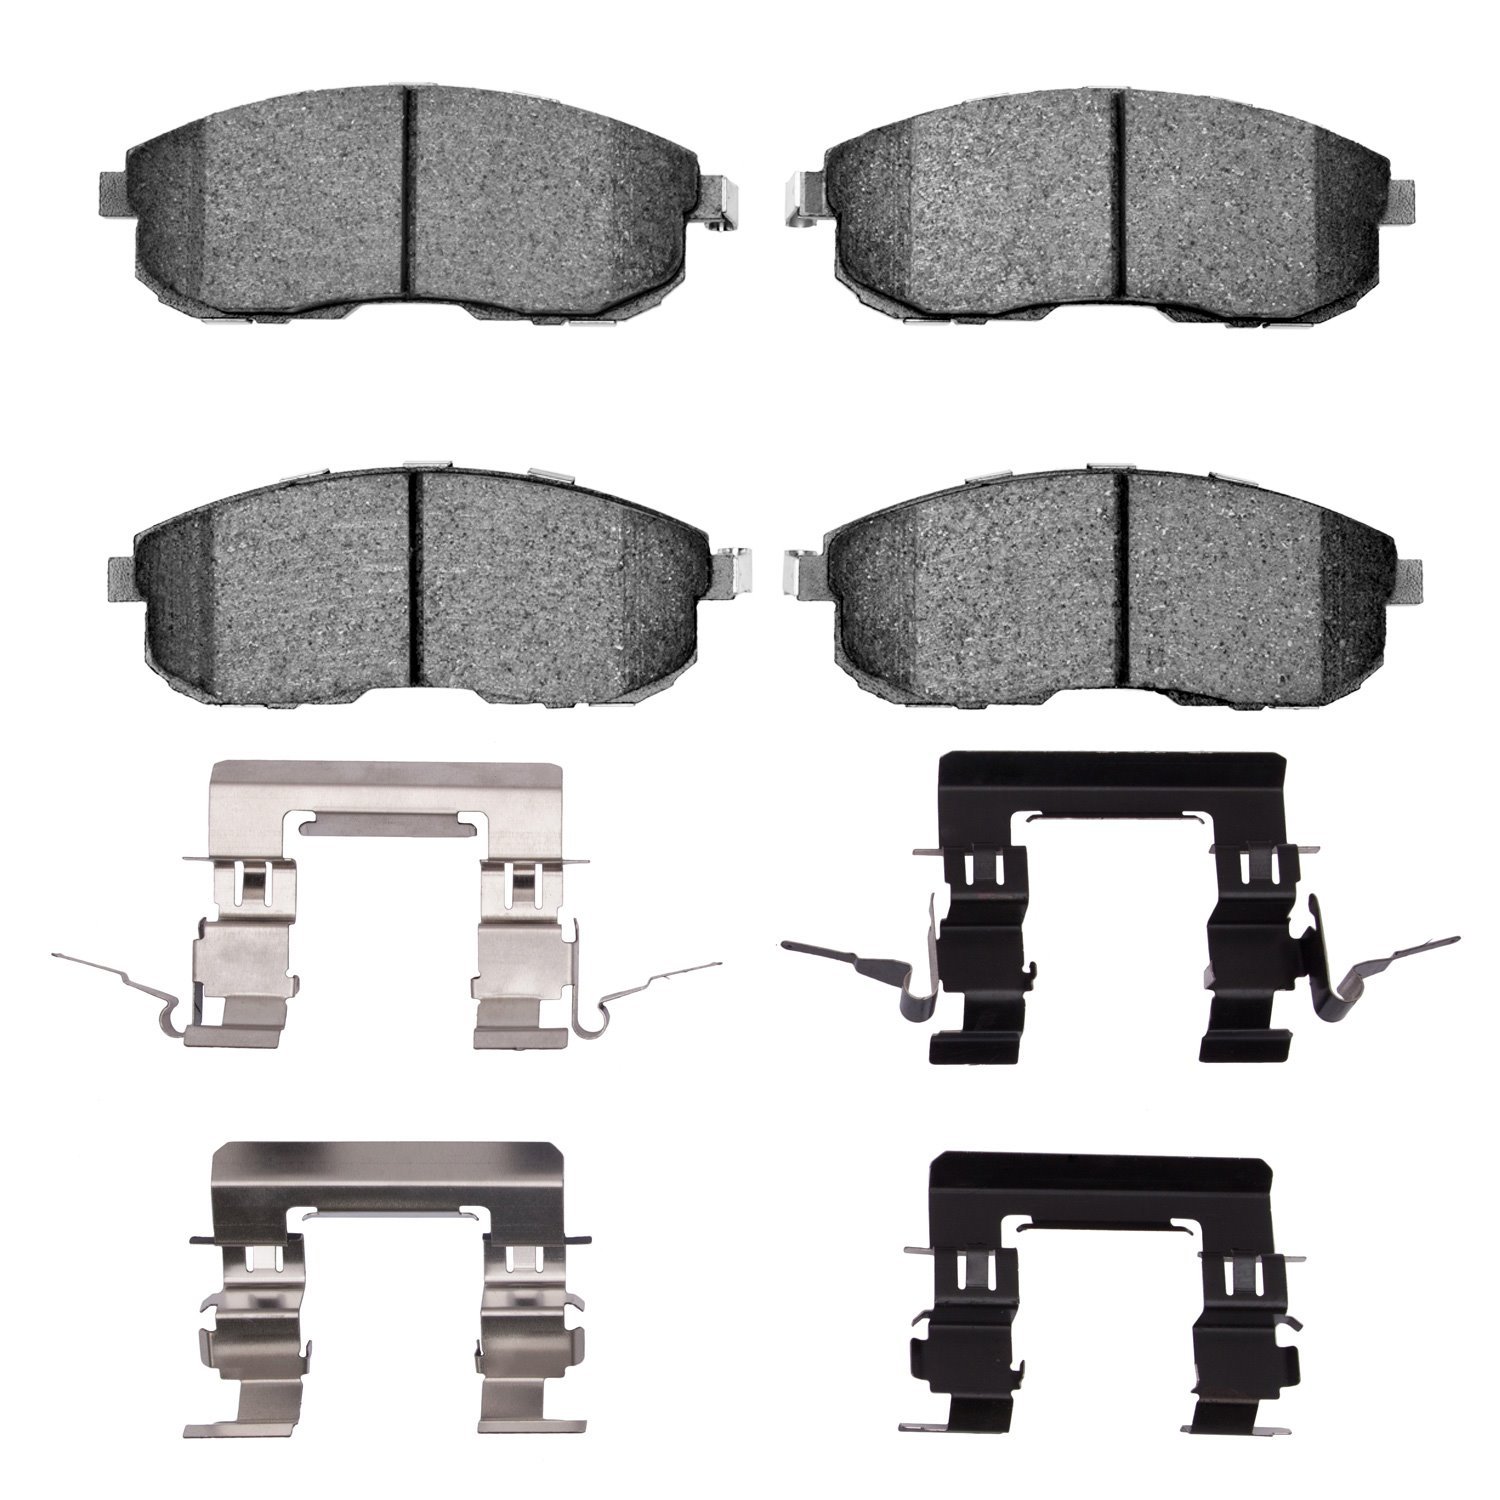 1310-0815-02 3000-Series Ceramic Brake Pads & Hardware Kit, 1999-2019 Infiniti/Nissan, Position: Front